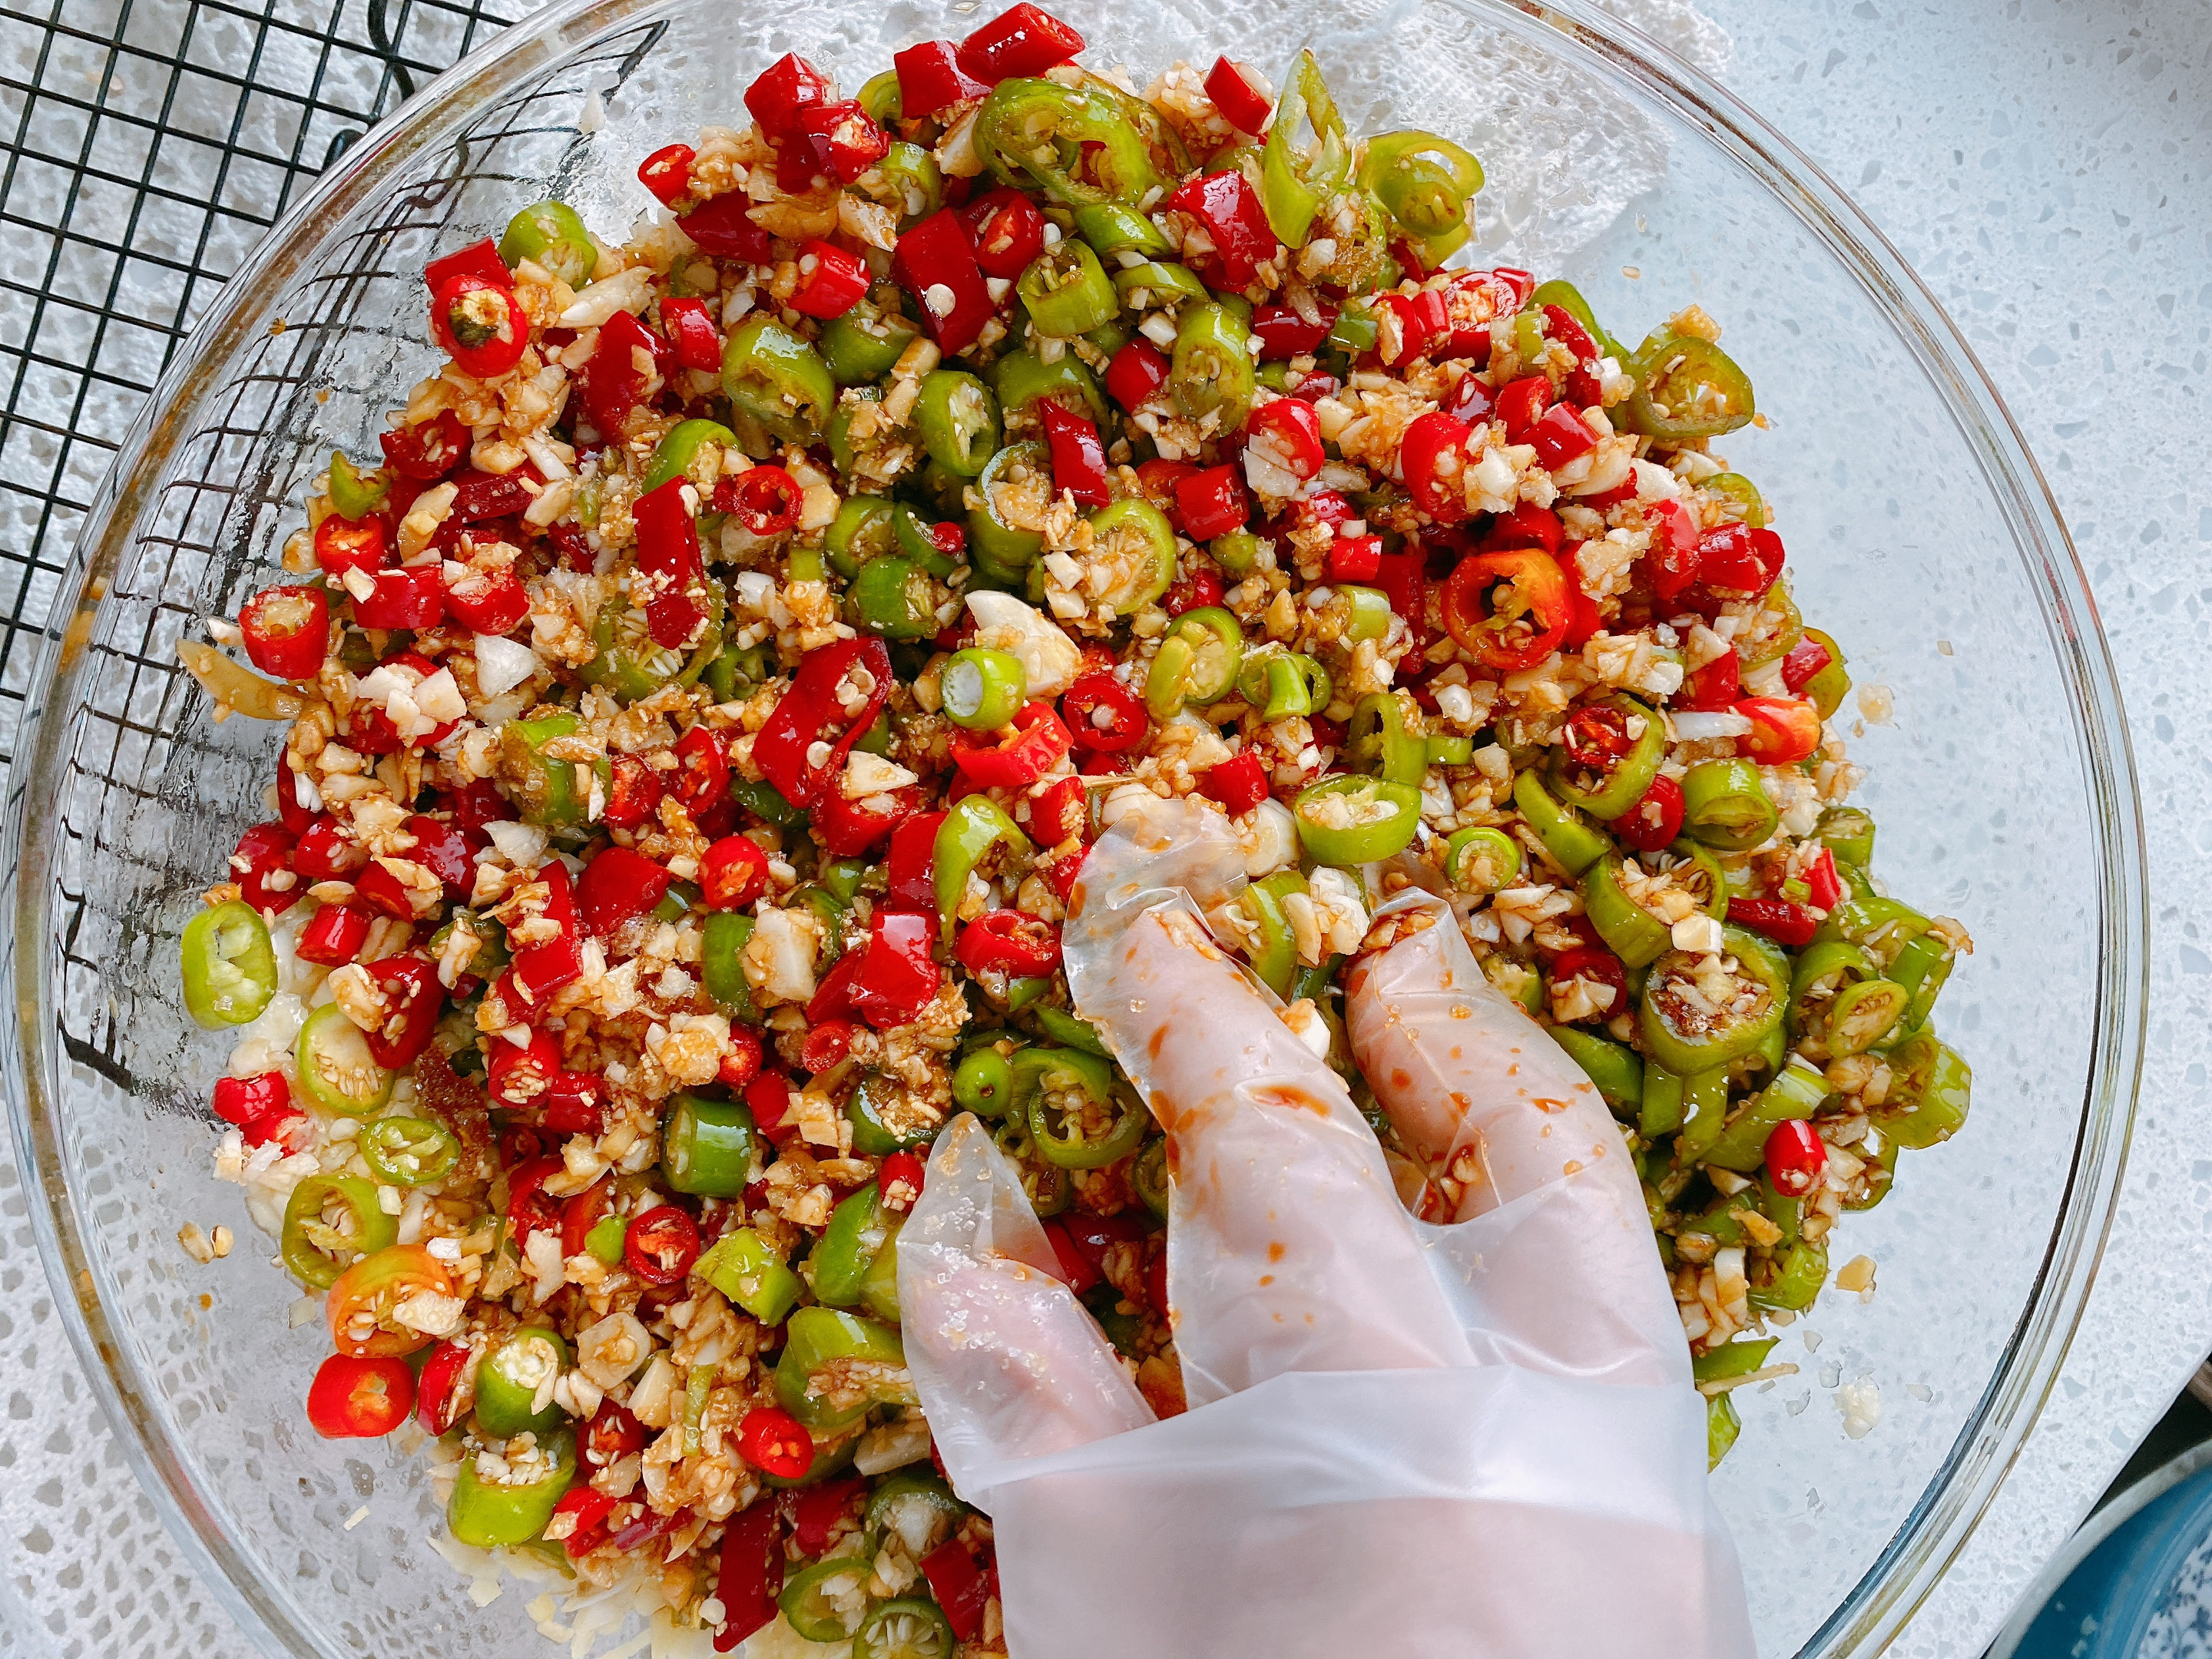 腌辣椒的季节到了，教你独家腌法，不加盐2小时就能吃，又香又辣